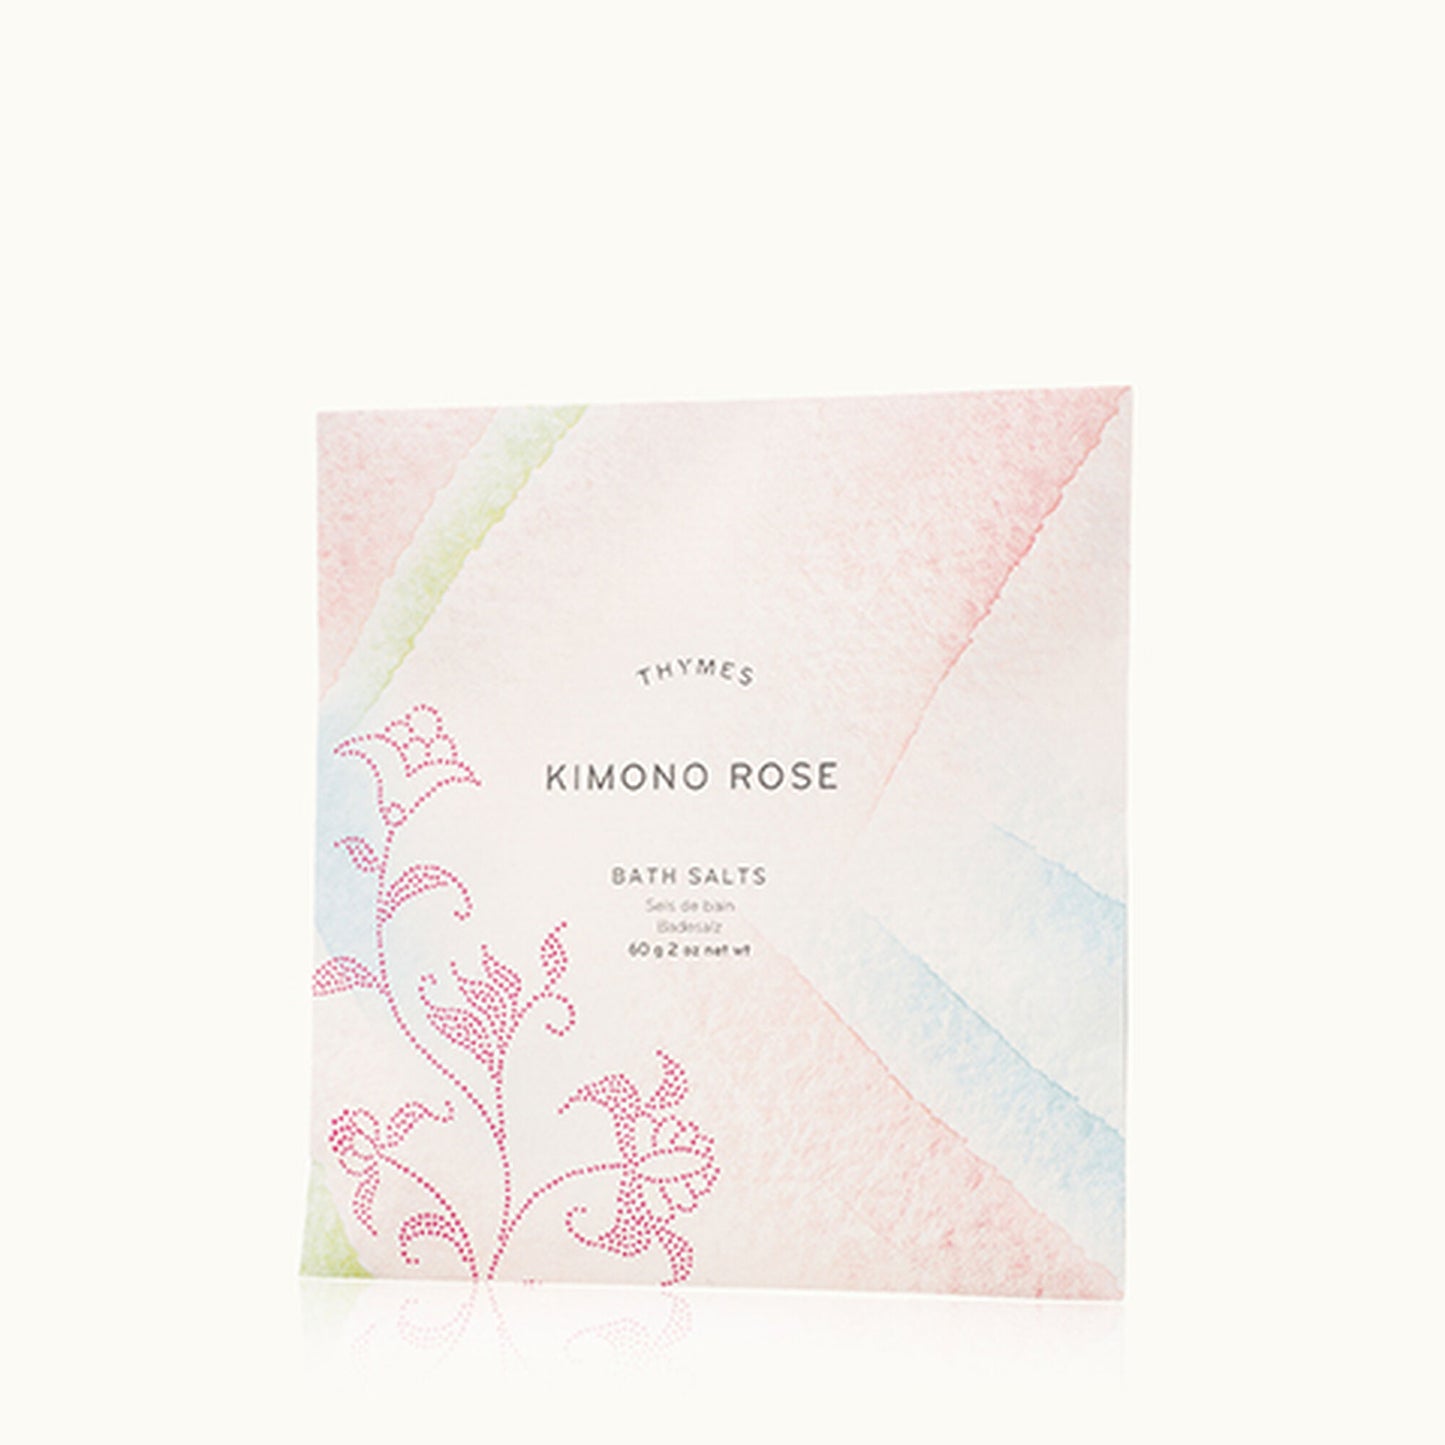 Kimono Rose Bath Salts, 2oz